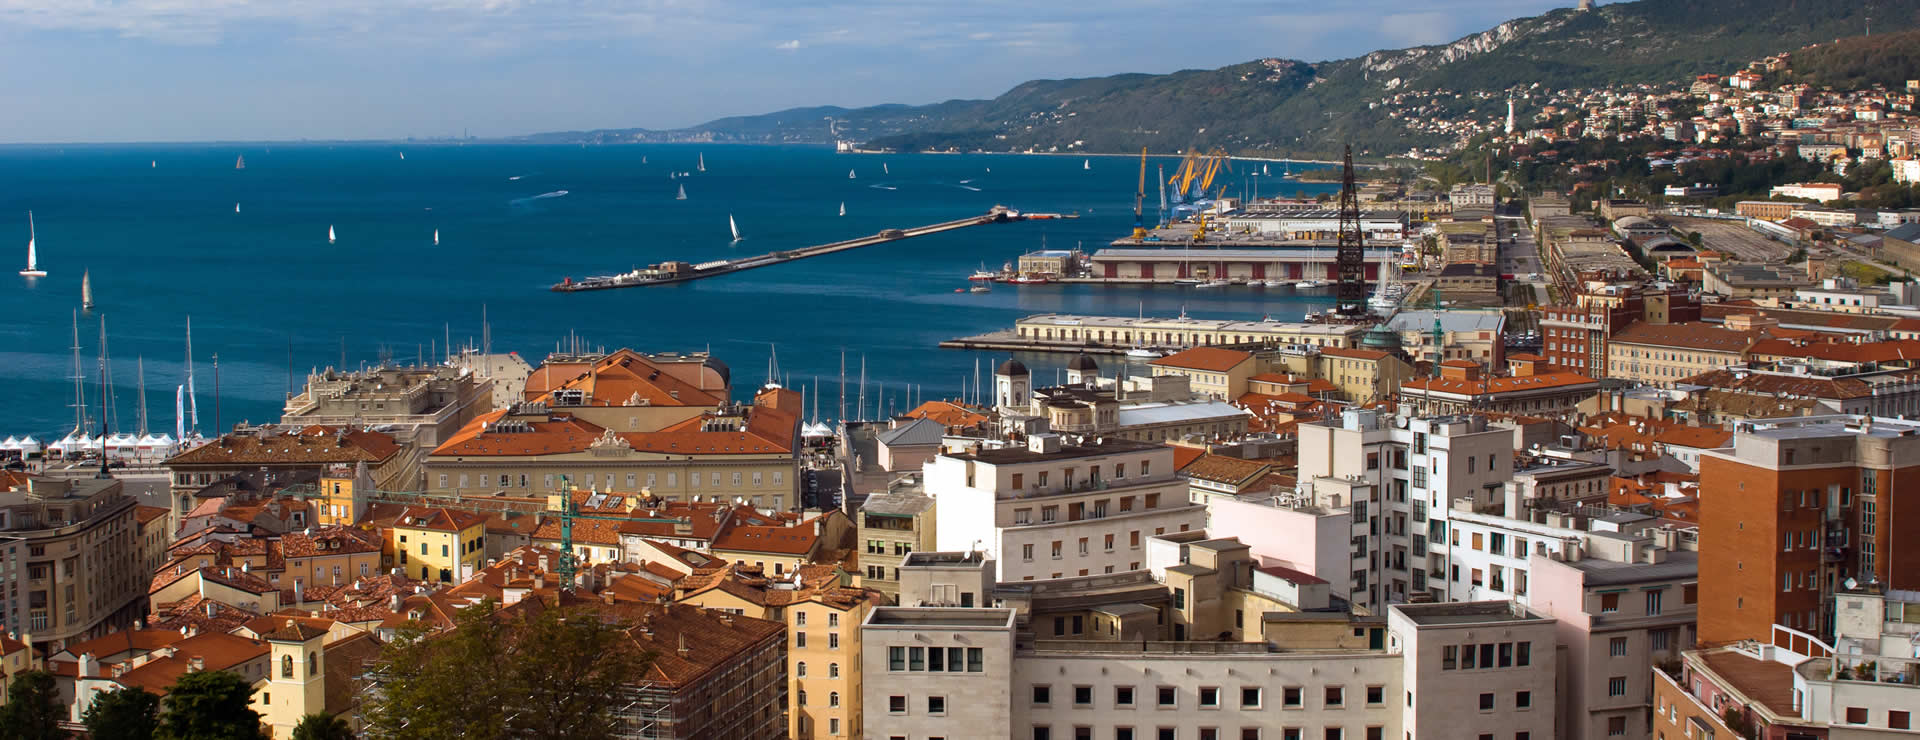 Trieste city centre and port